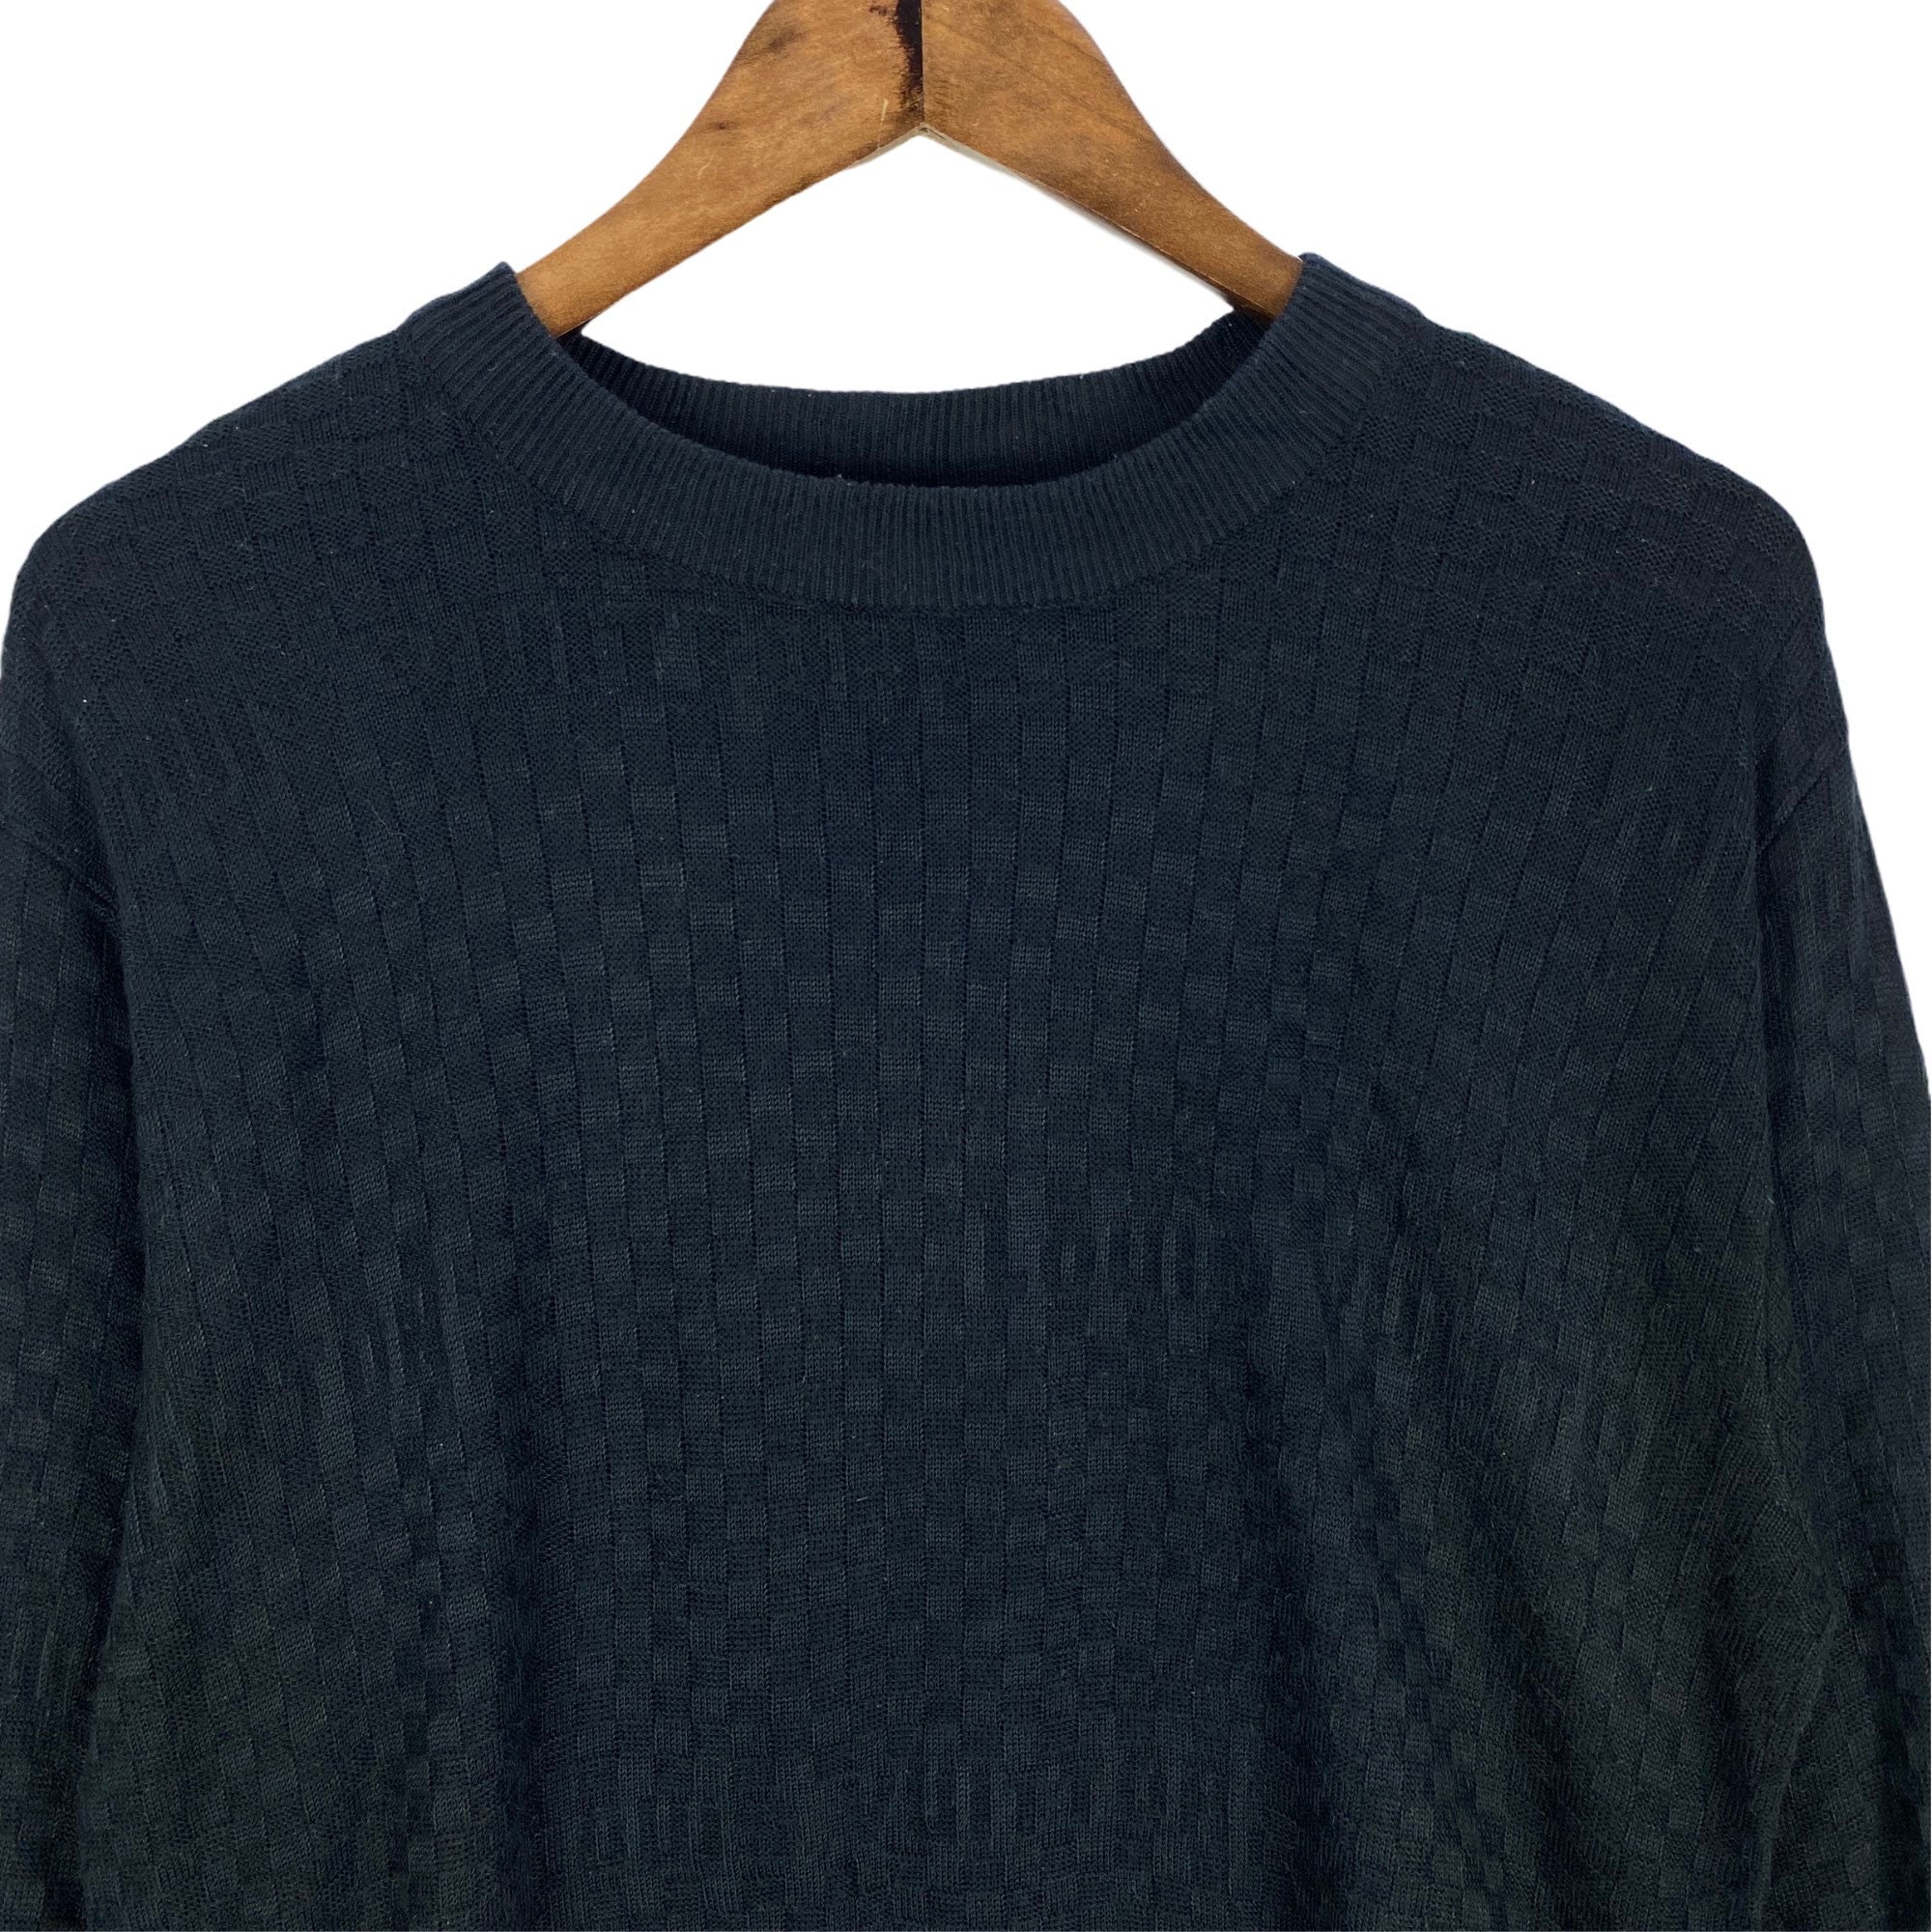 Vintage Authentic Louis Vuitton Knitwear Sweatshirt Crewneck